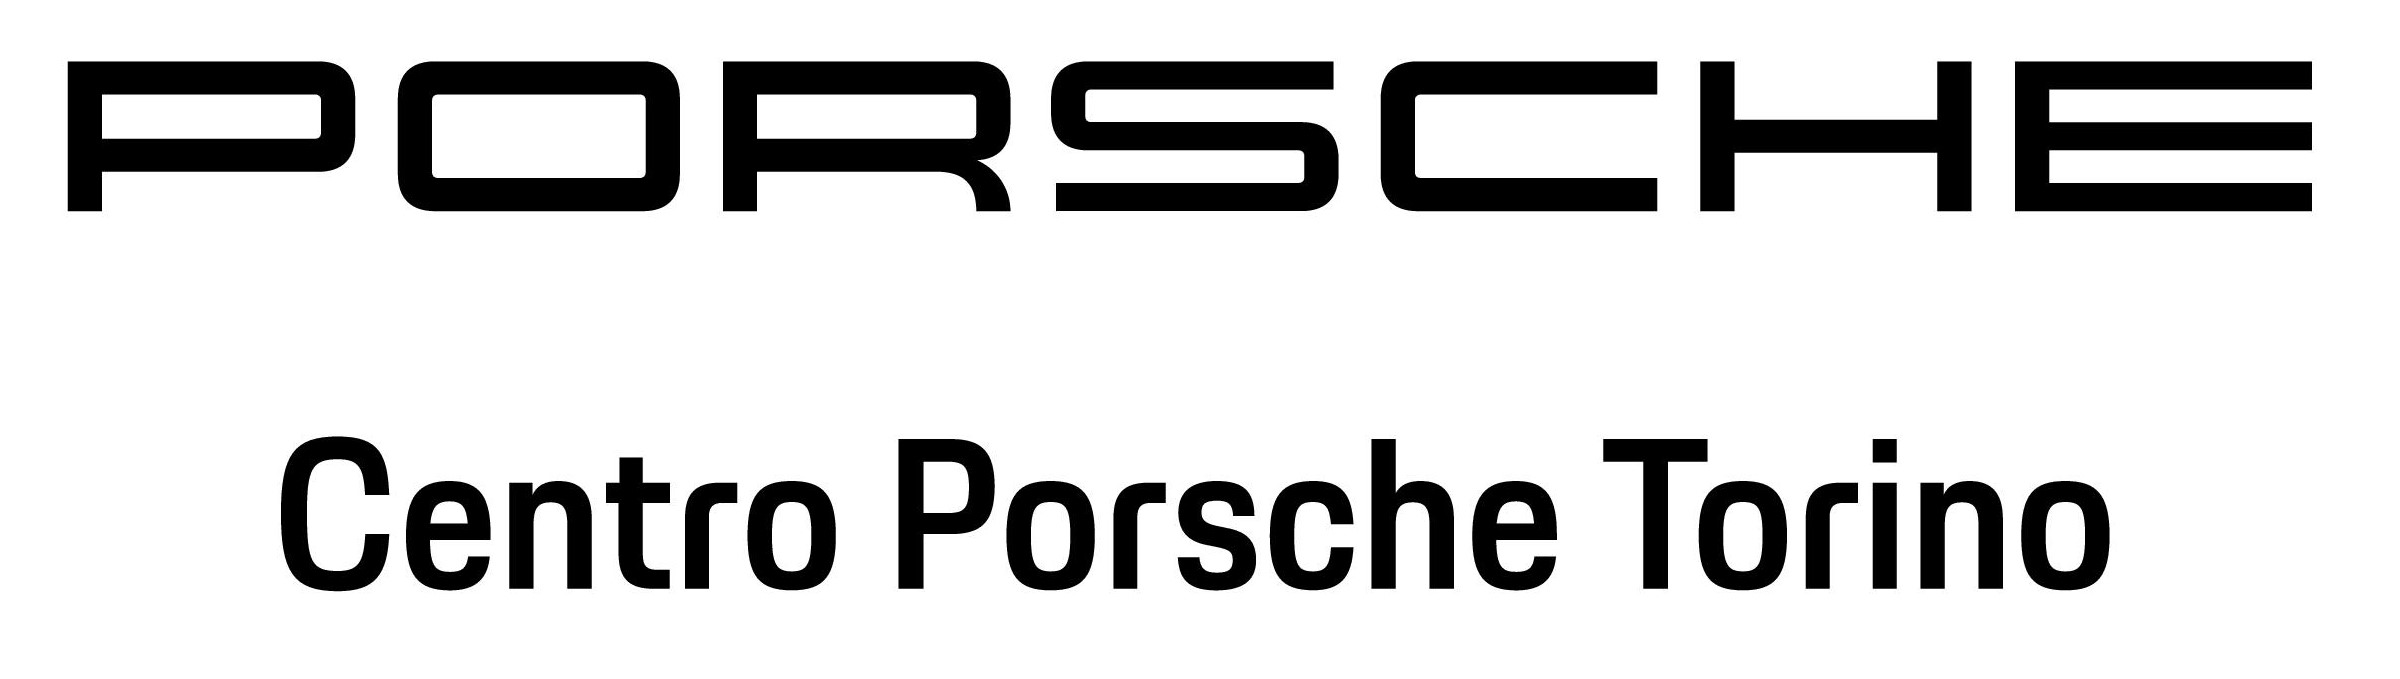 EE Logo Centro Porsche Torino Nero